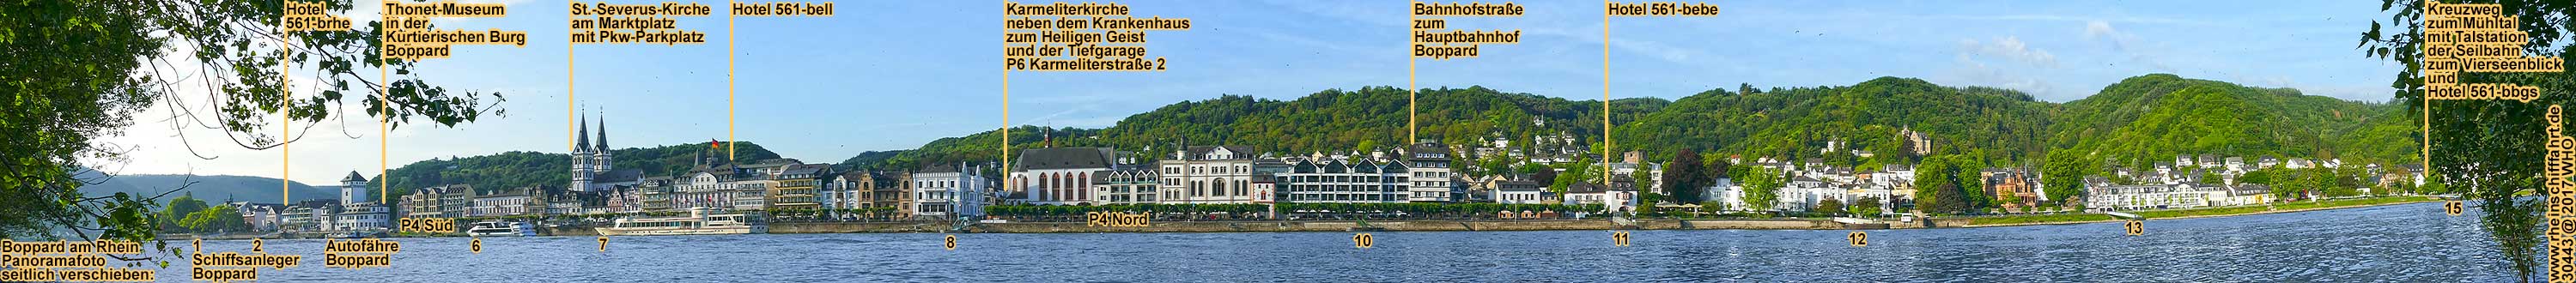 Urlaub über Ostern in Boppard am Rhein, Osterkurzreise im Rheintal, inmitten vom UNESCO-Weltkulturerbe Mittelrhein